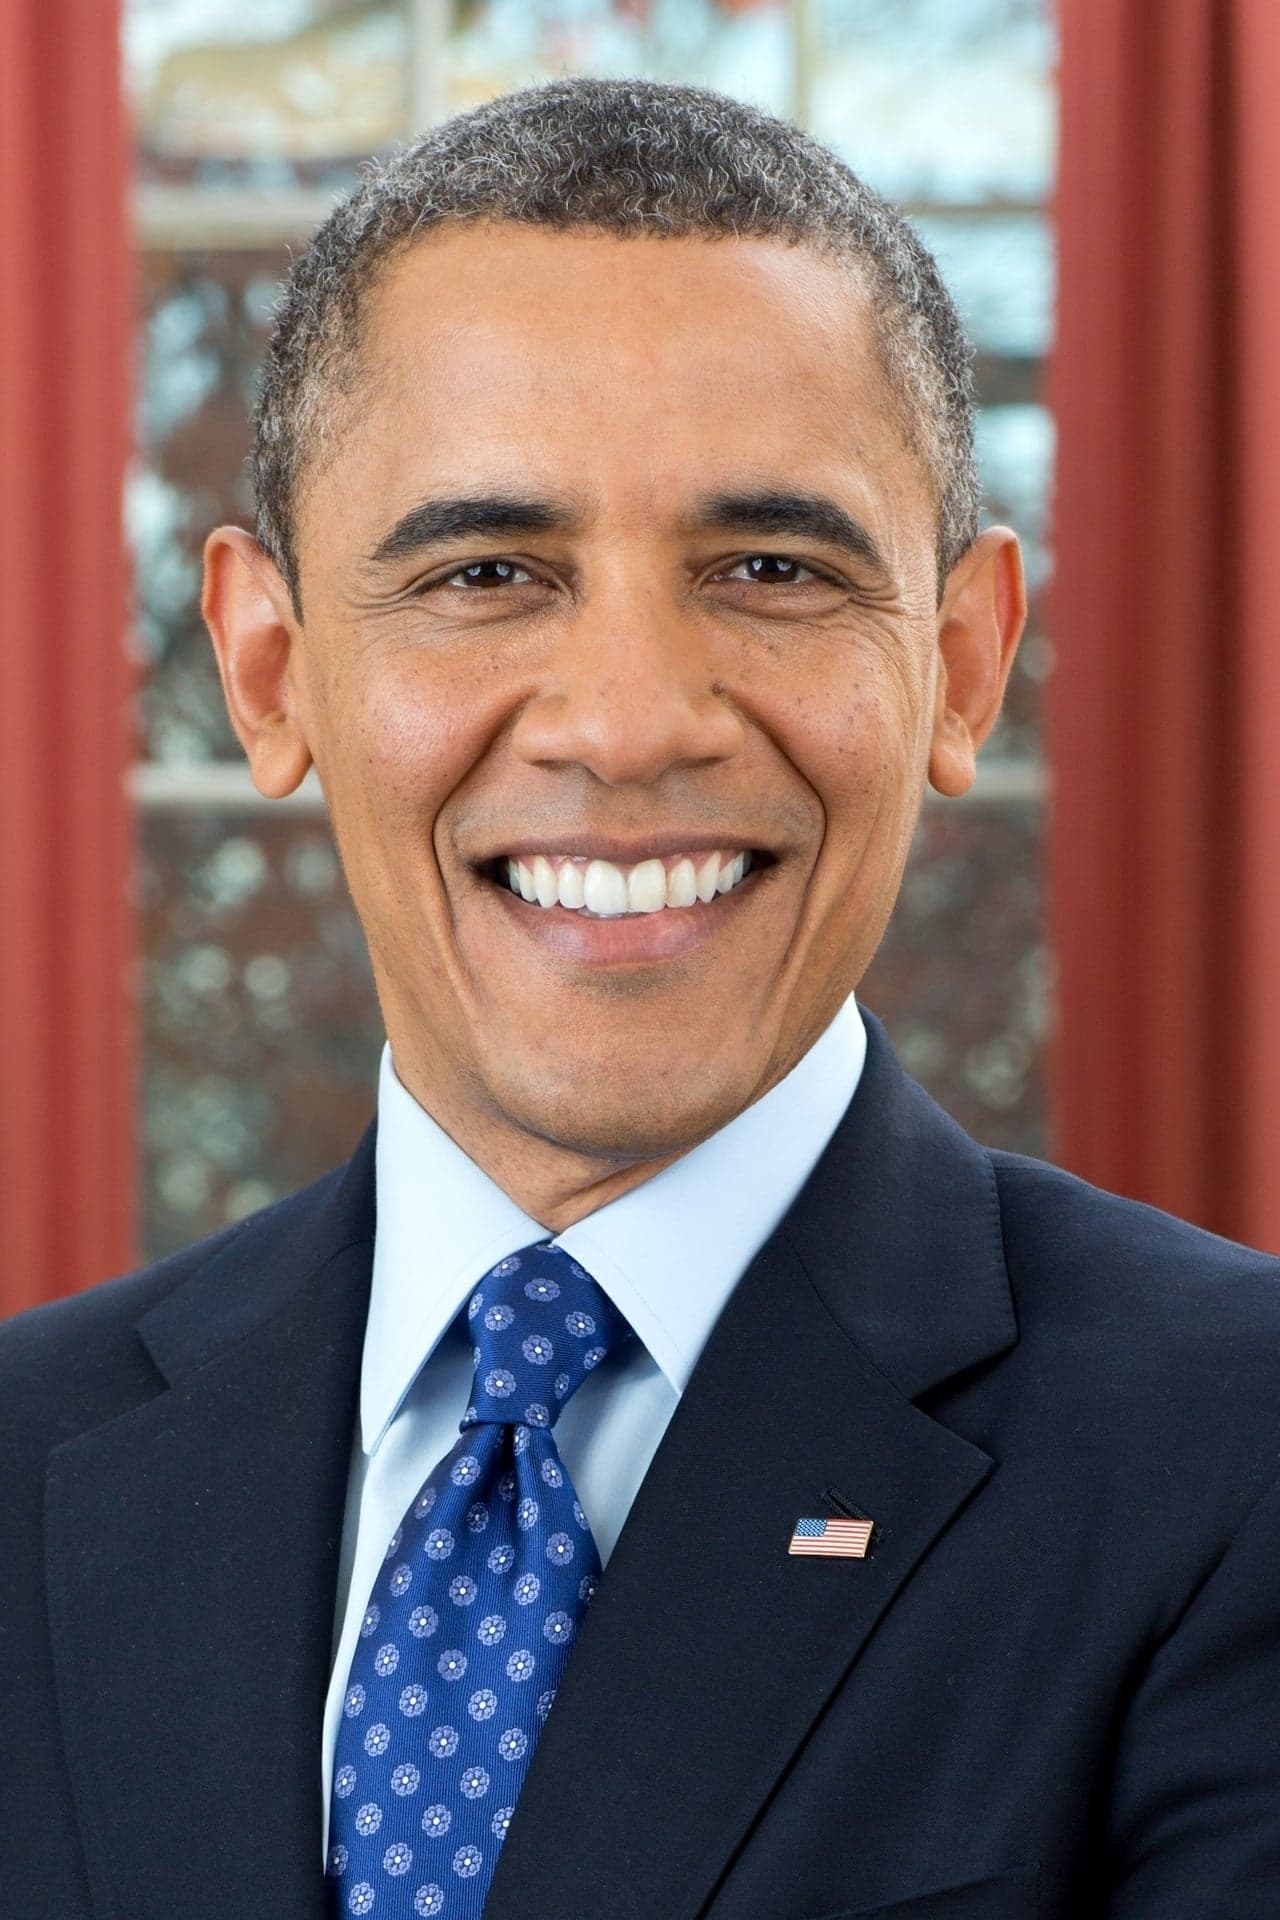 Barack Obama | Himself (archive footage) (uncredited)